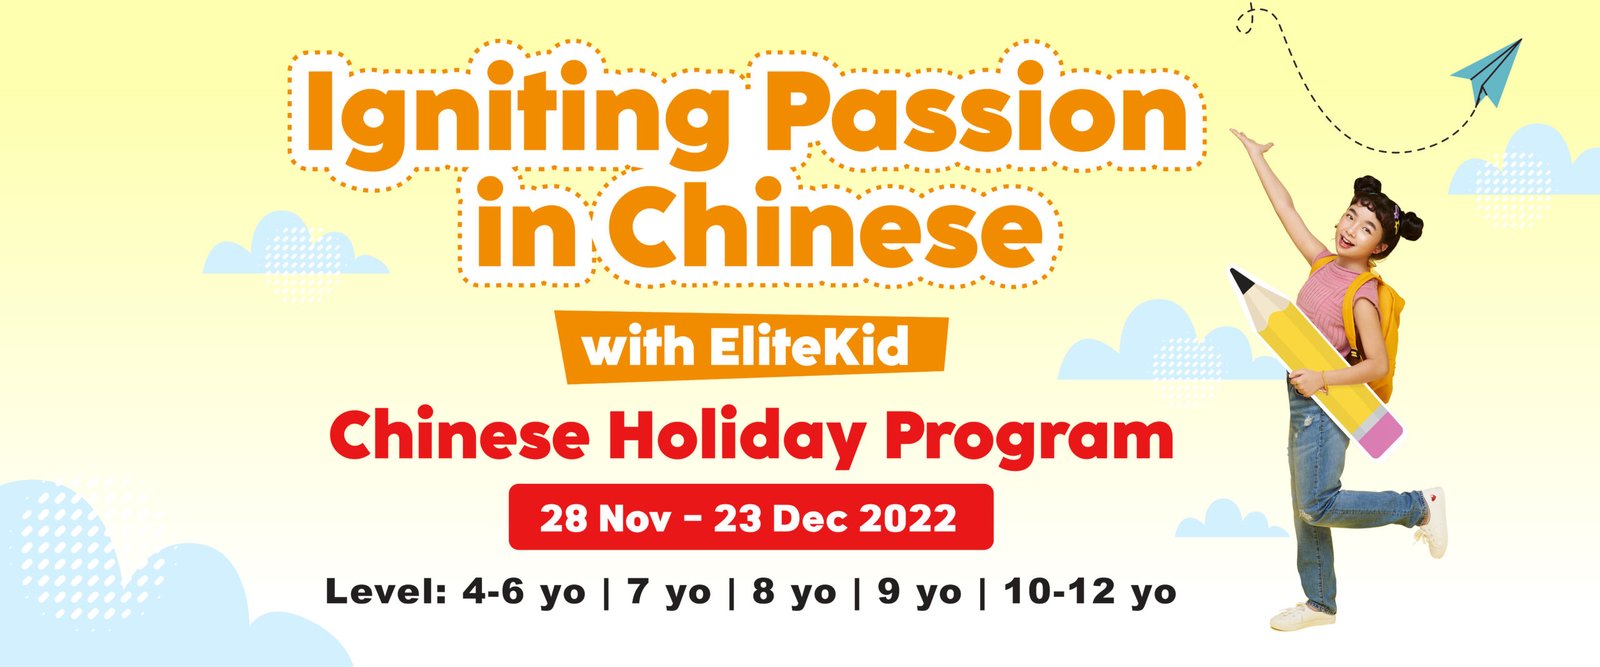 elitekid december chinese holiday program-website banner